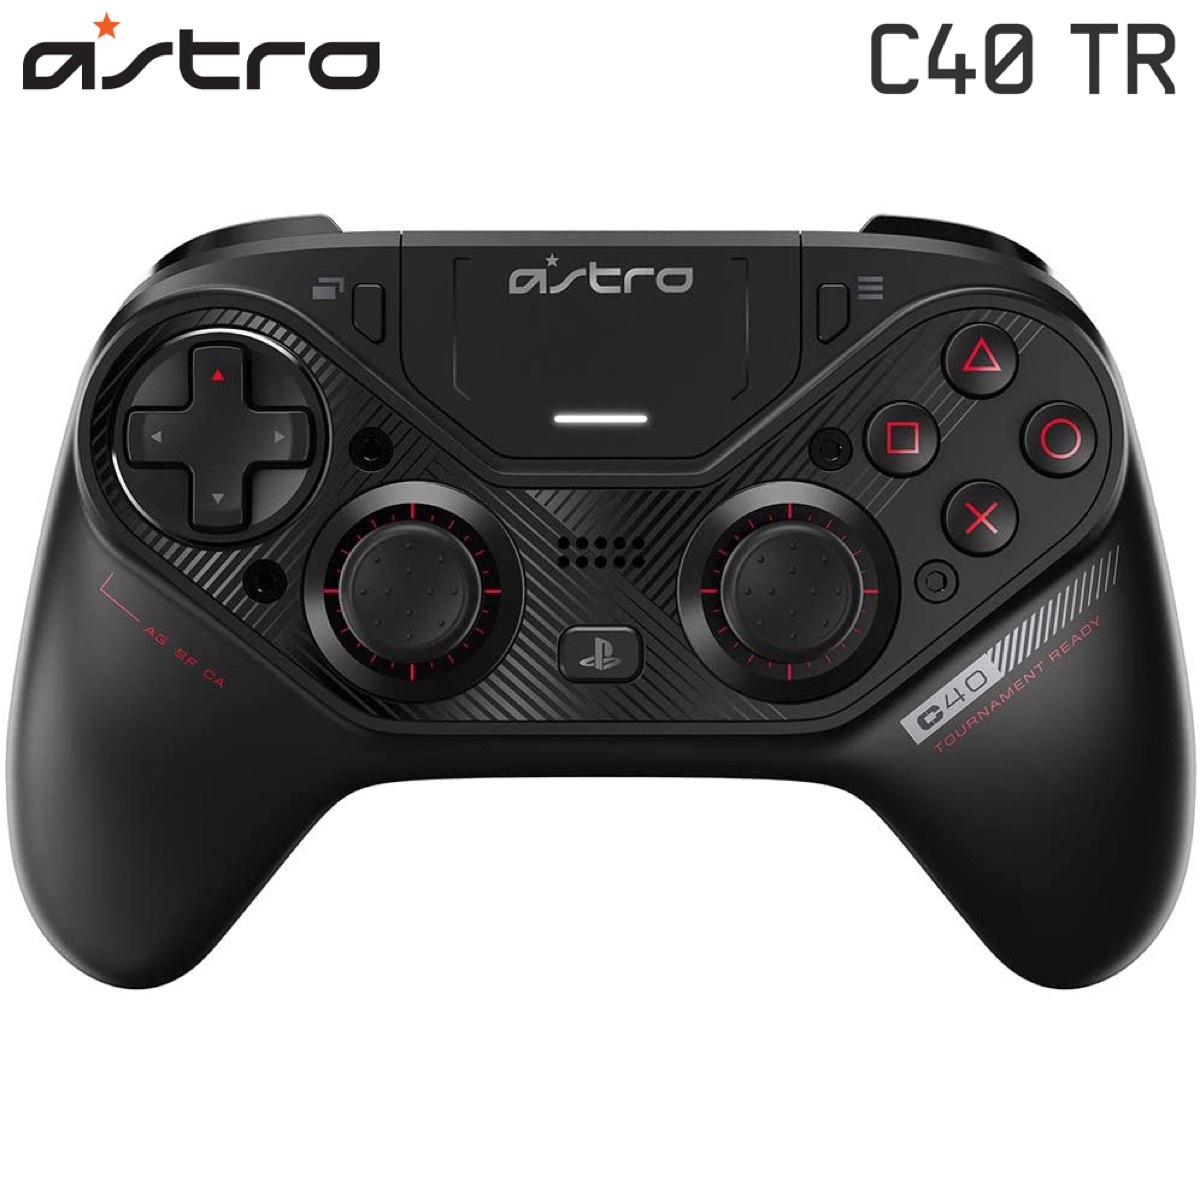 楽天市場 Astro Gaming C40 Tr コントローラー ジョイコン ワイヤレス 無線 有線 Ps4 Pc Windows Mac C40tr アストロ ゲーミング Logicool ロジクール 06 Apマーケット